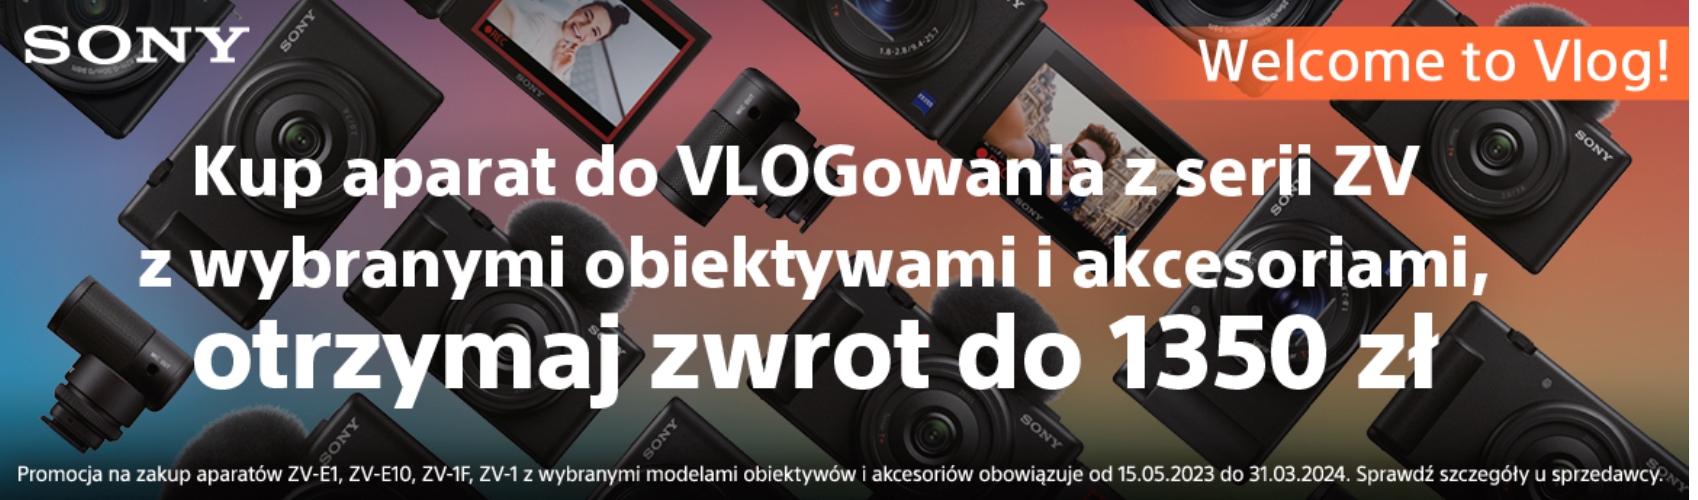 Kup aparat do Vlogowania z Serii ZV z wybranymi obiektywami i akcesoriami  i otrzymaj zwrot do 1350 zł